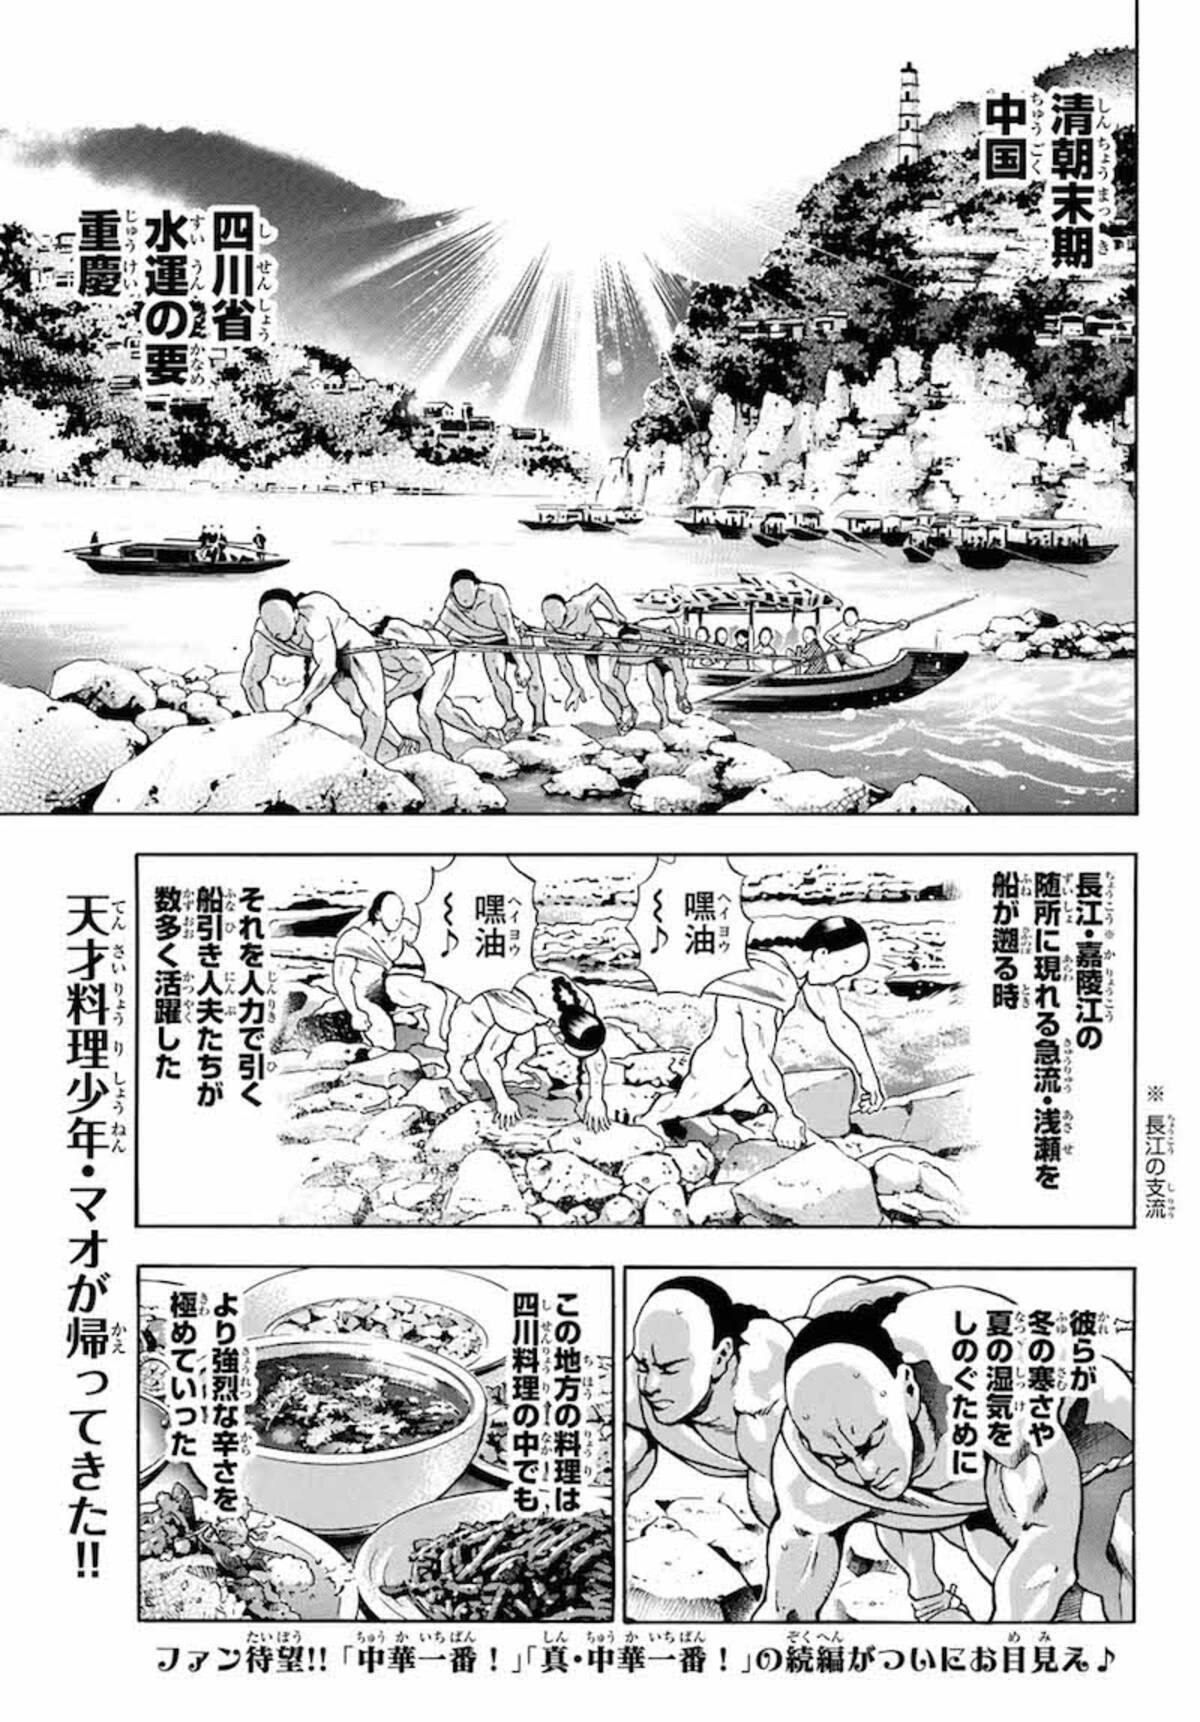 料理漫画の金字塔 中華一番 が復活 極上の食修業 四川で再開 17年11月17日 エキサイトニュース